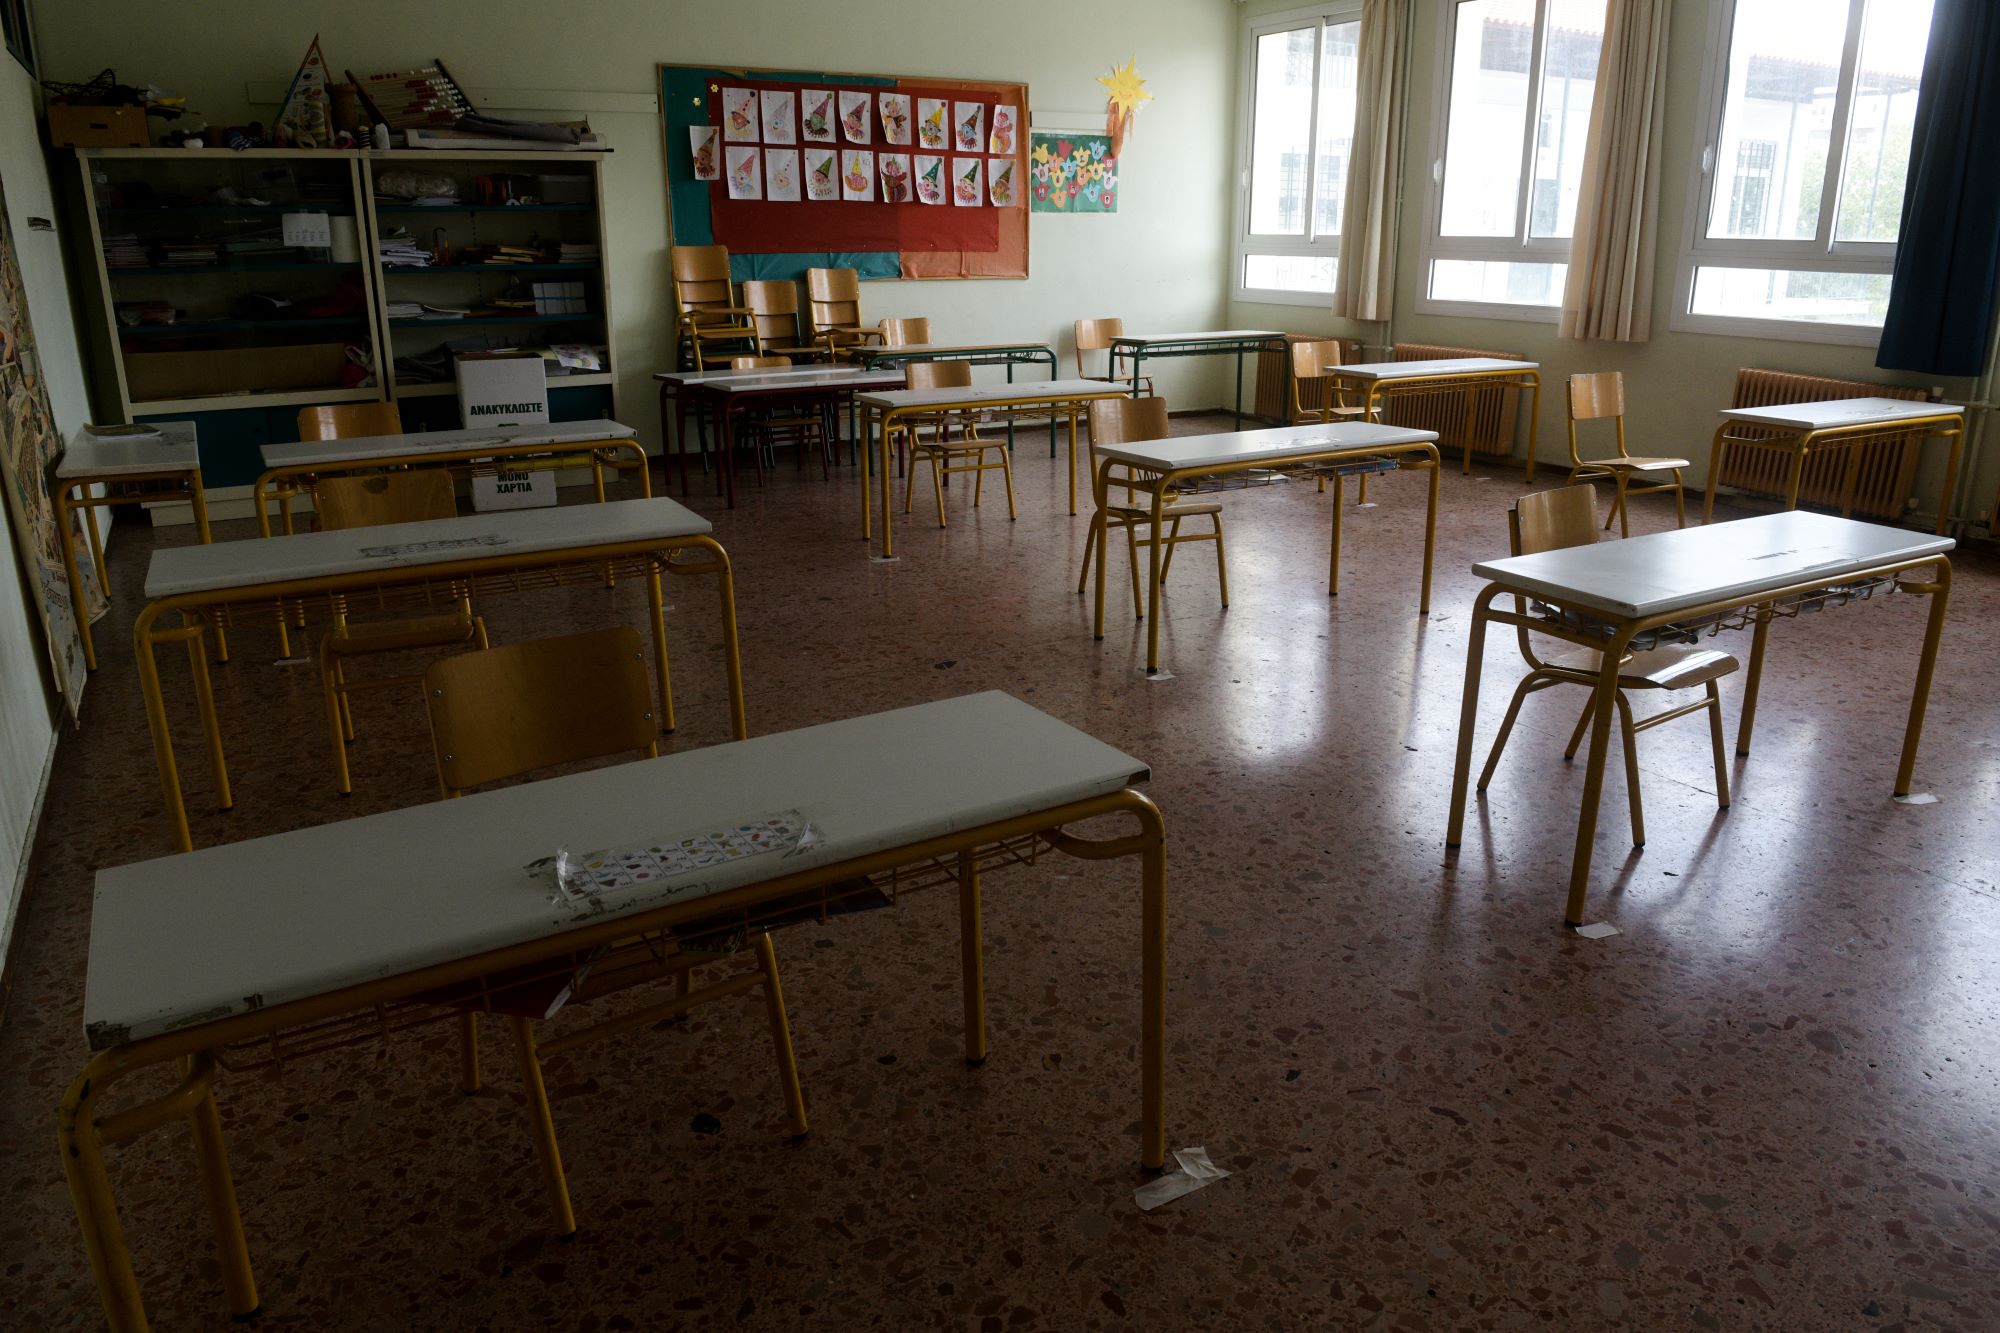 Κόρινθος: Κλειστά θα παραμείνουν αύριο όλα τα σχολεία του Δήμου Ξυλοκάστρου – Ευρωστίνης, λόγω κακοκαιρίας